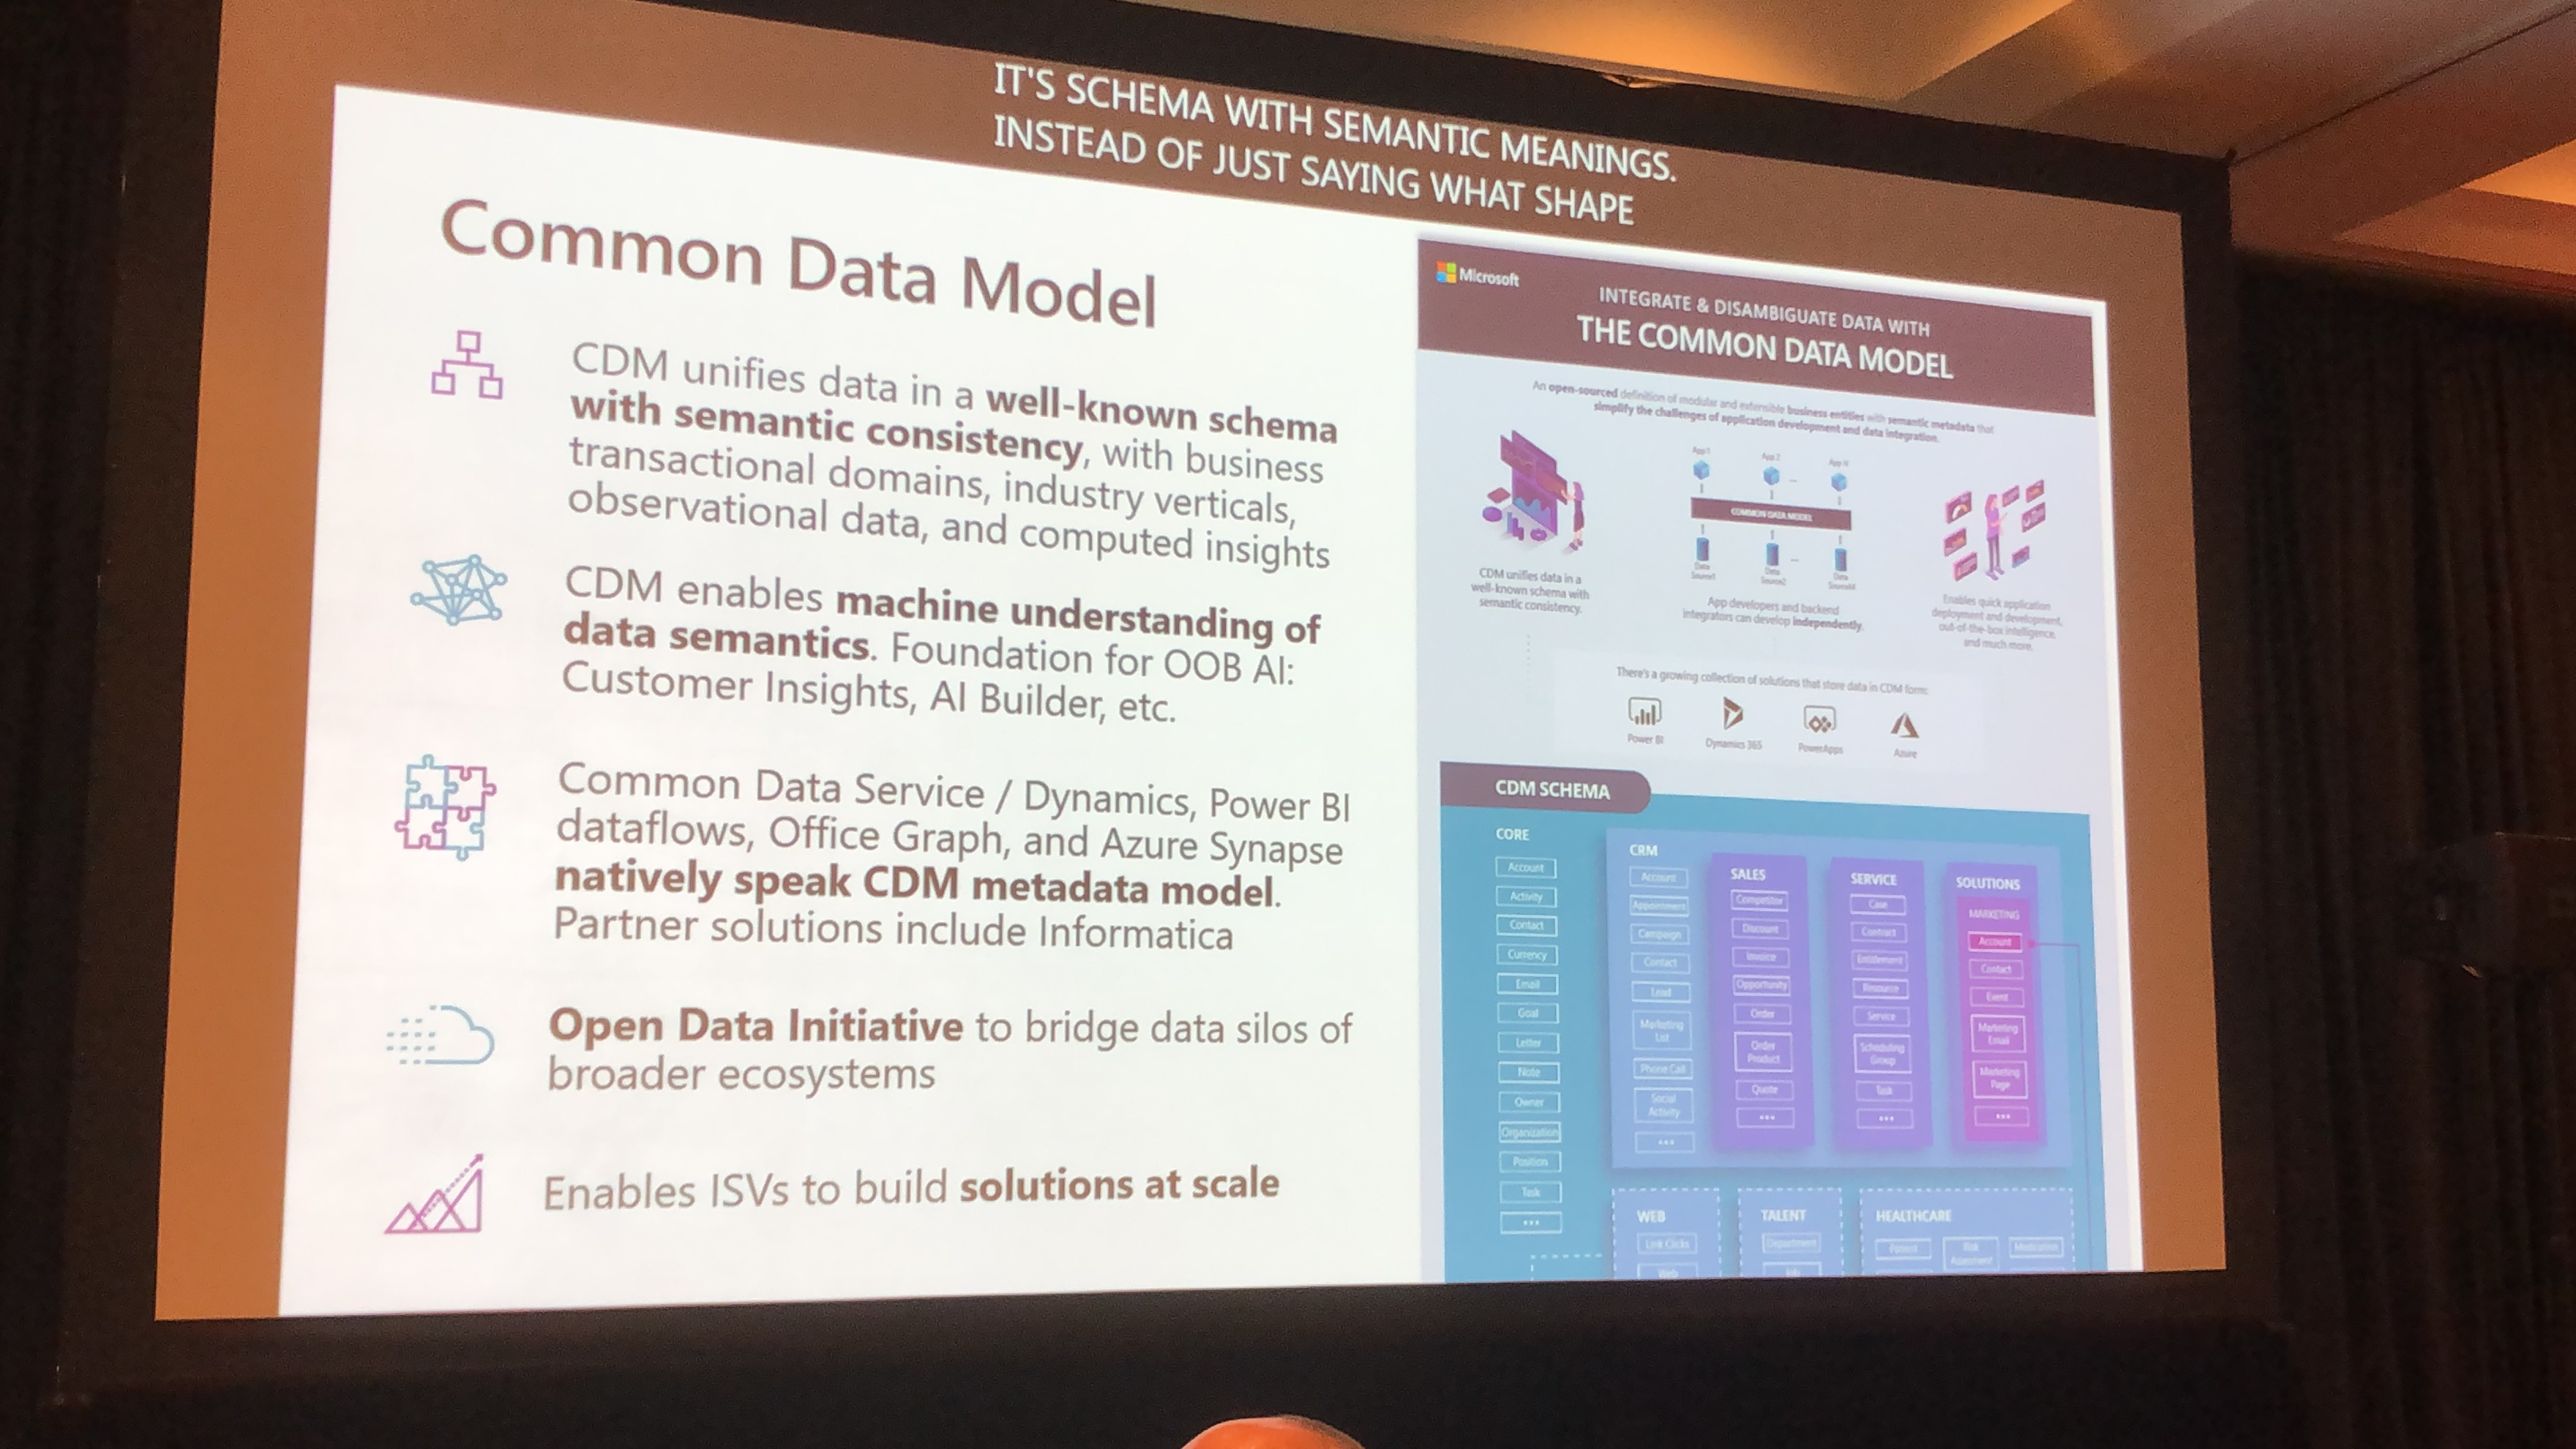 A slide explaining the Common Data Model